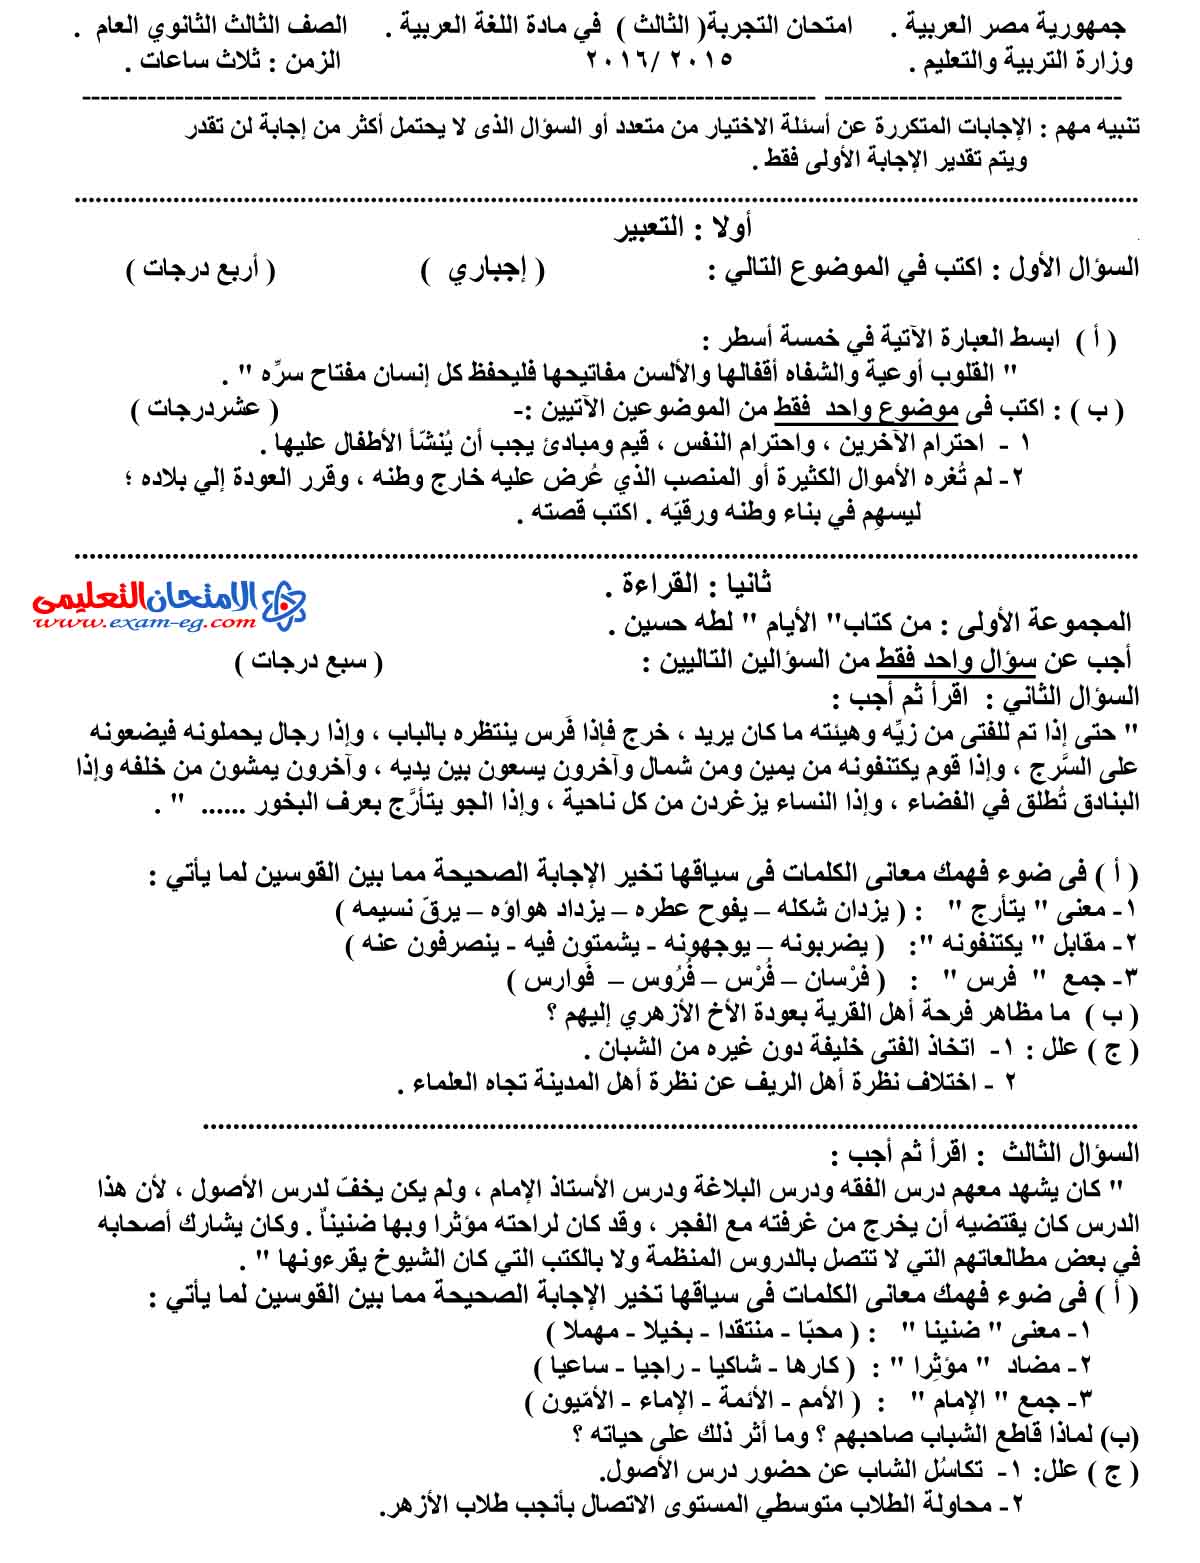 امتحان اللغة العربية 3 - مدرسة اون لاين (1)